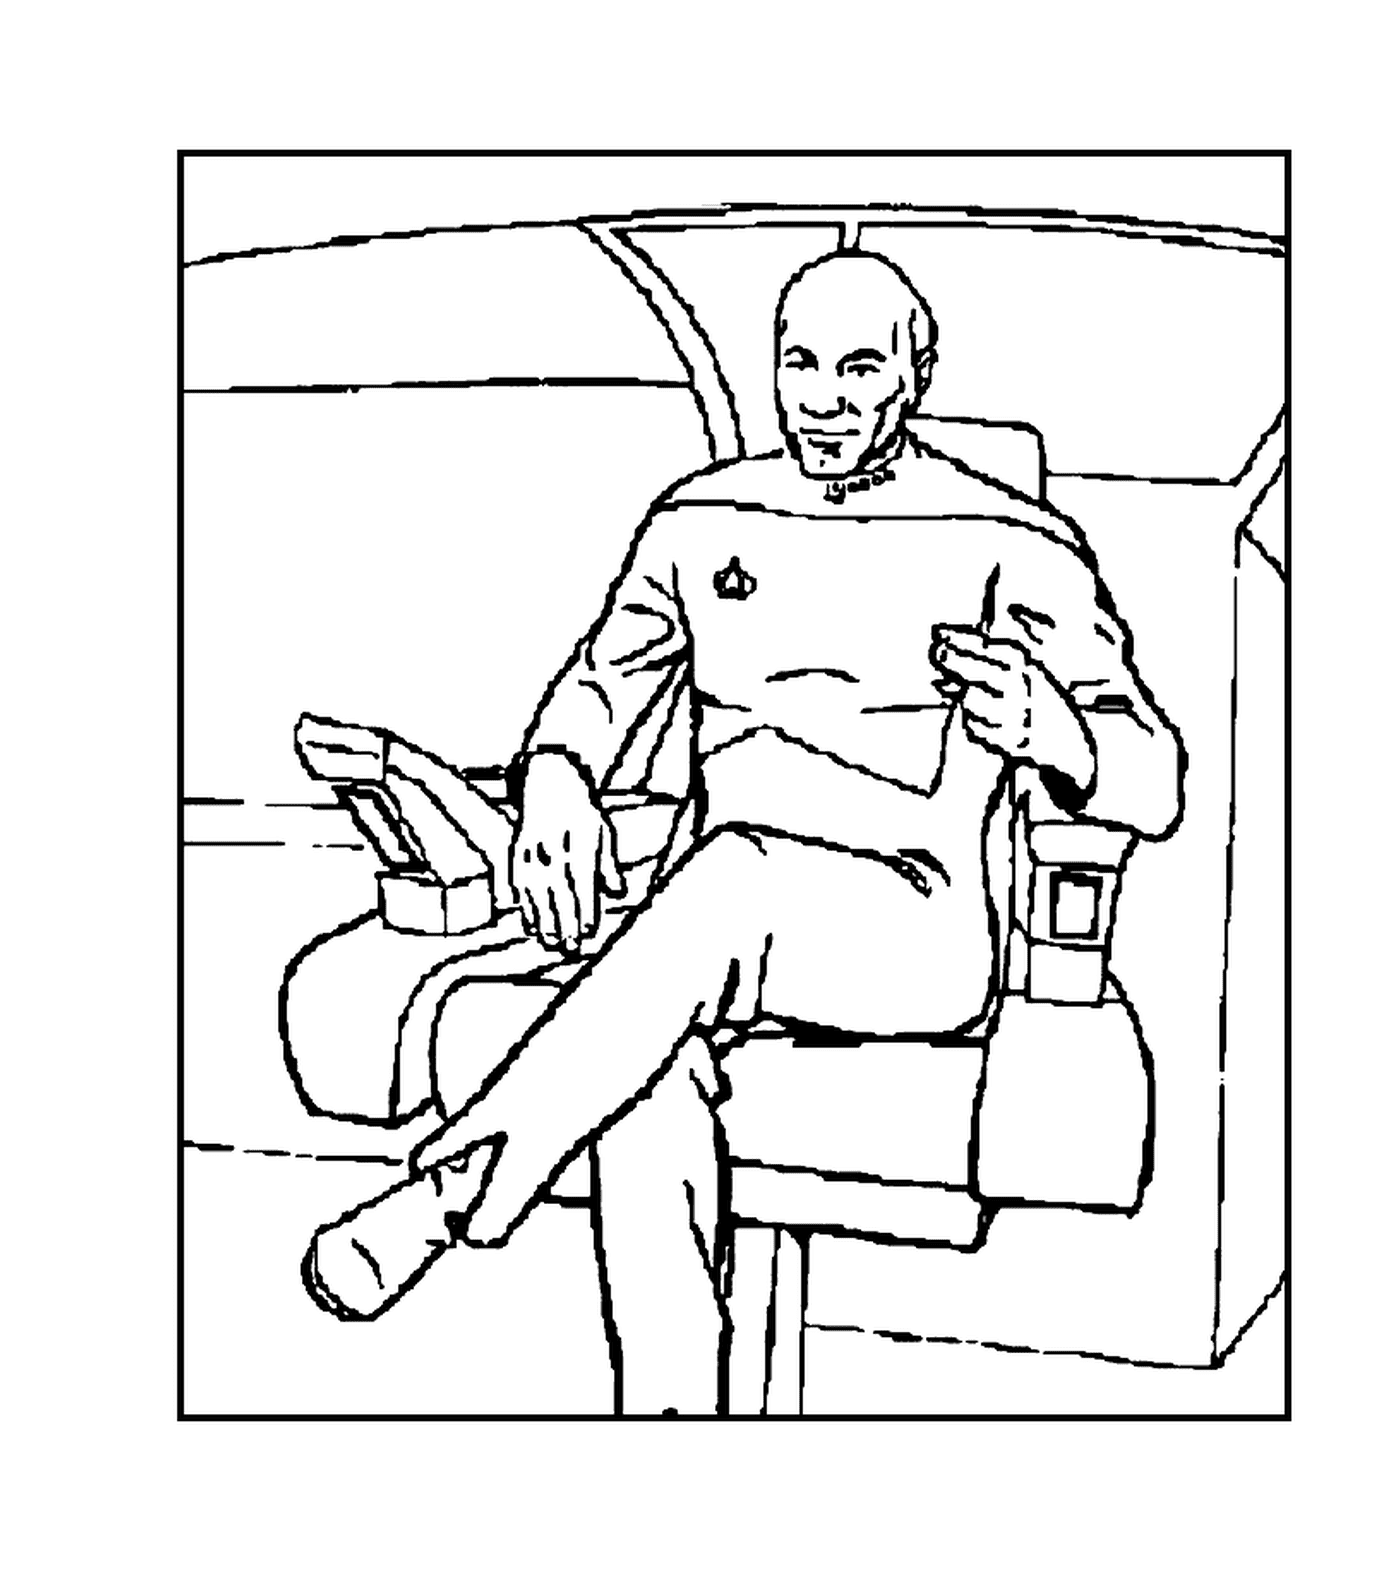  Un personaje de Star Trek en un sillón 